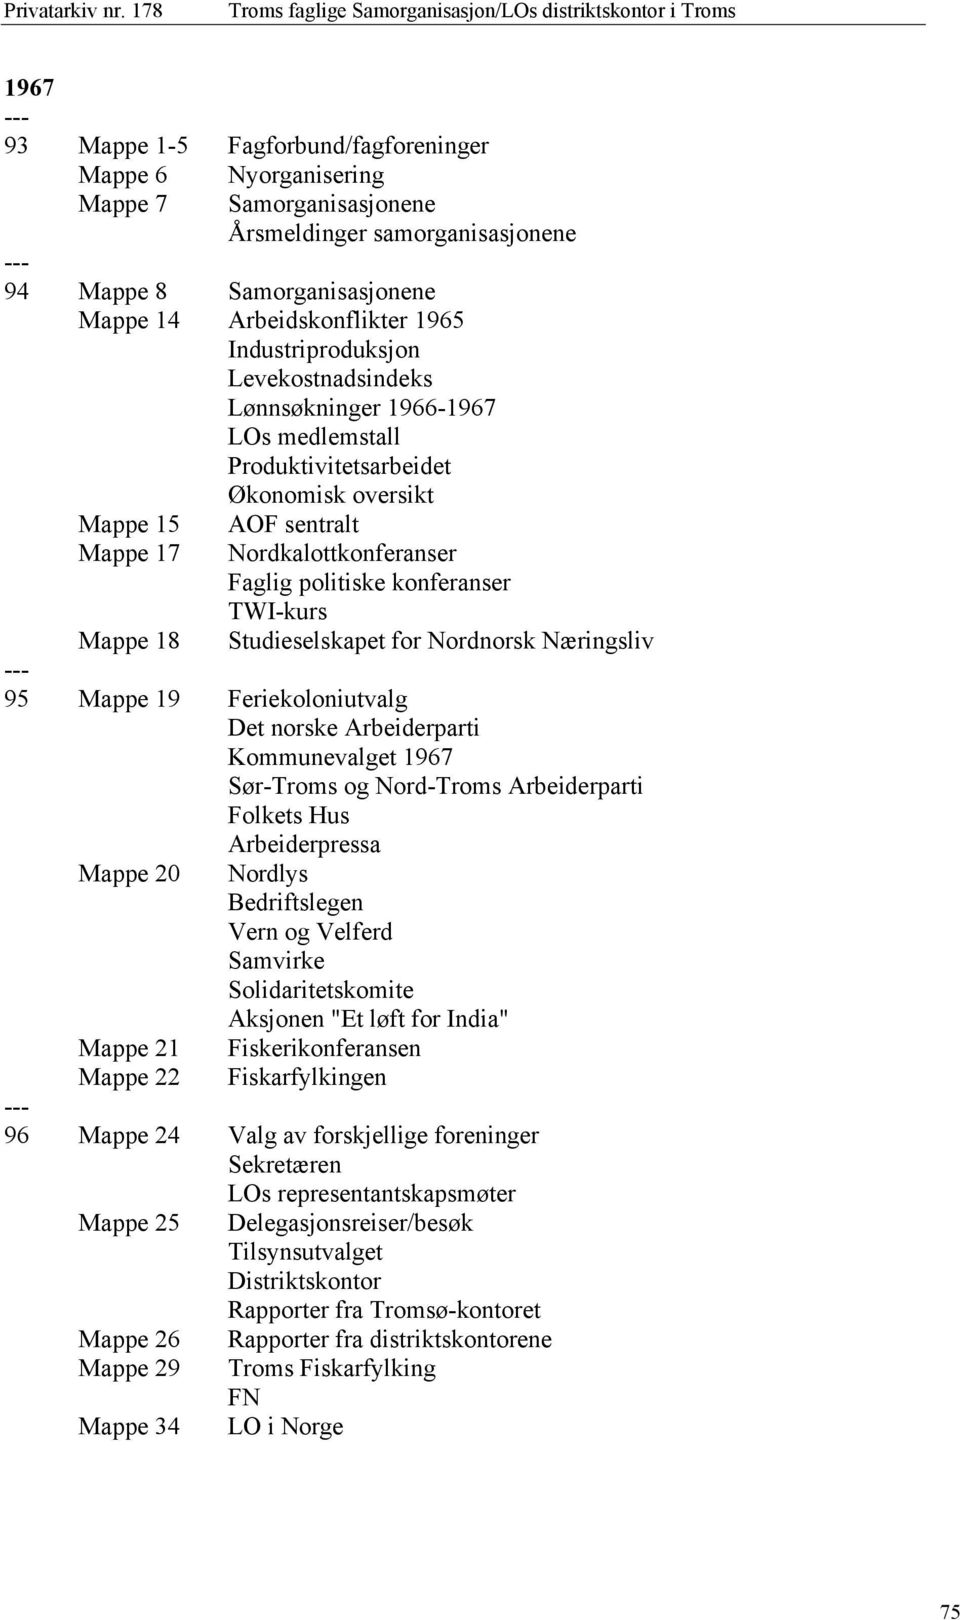 konferanser TWI-kurs Mappe 18 Studieselskapet for Nordnorsk Næringsliv 95 Mappe 19 Feriekoloniutvalg Det norske Arbeiderparti Kommunevalget 1967 Sør-Troms og Nord-Troms Arbeiderparti Folkets Hus